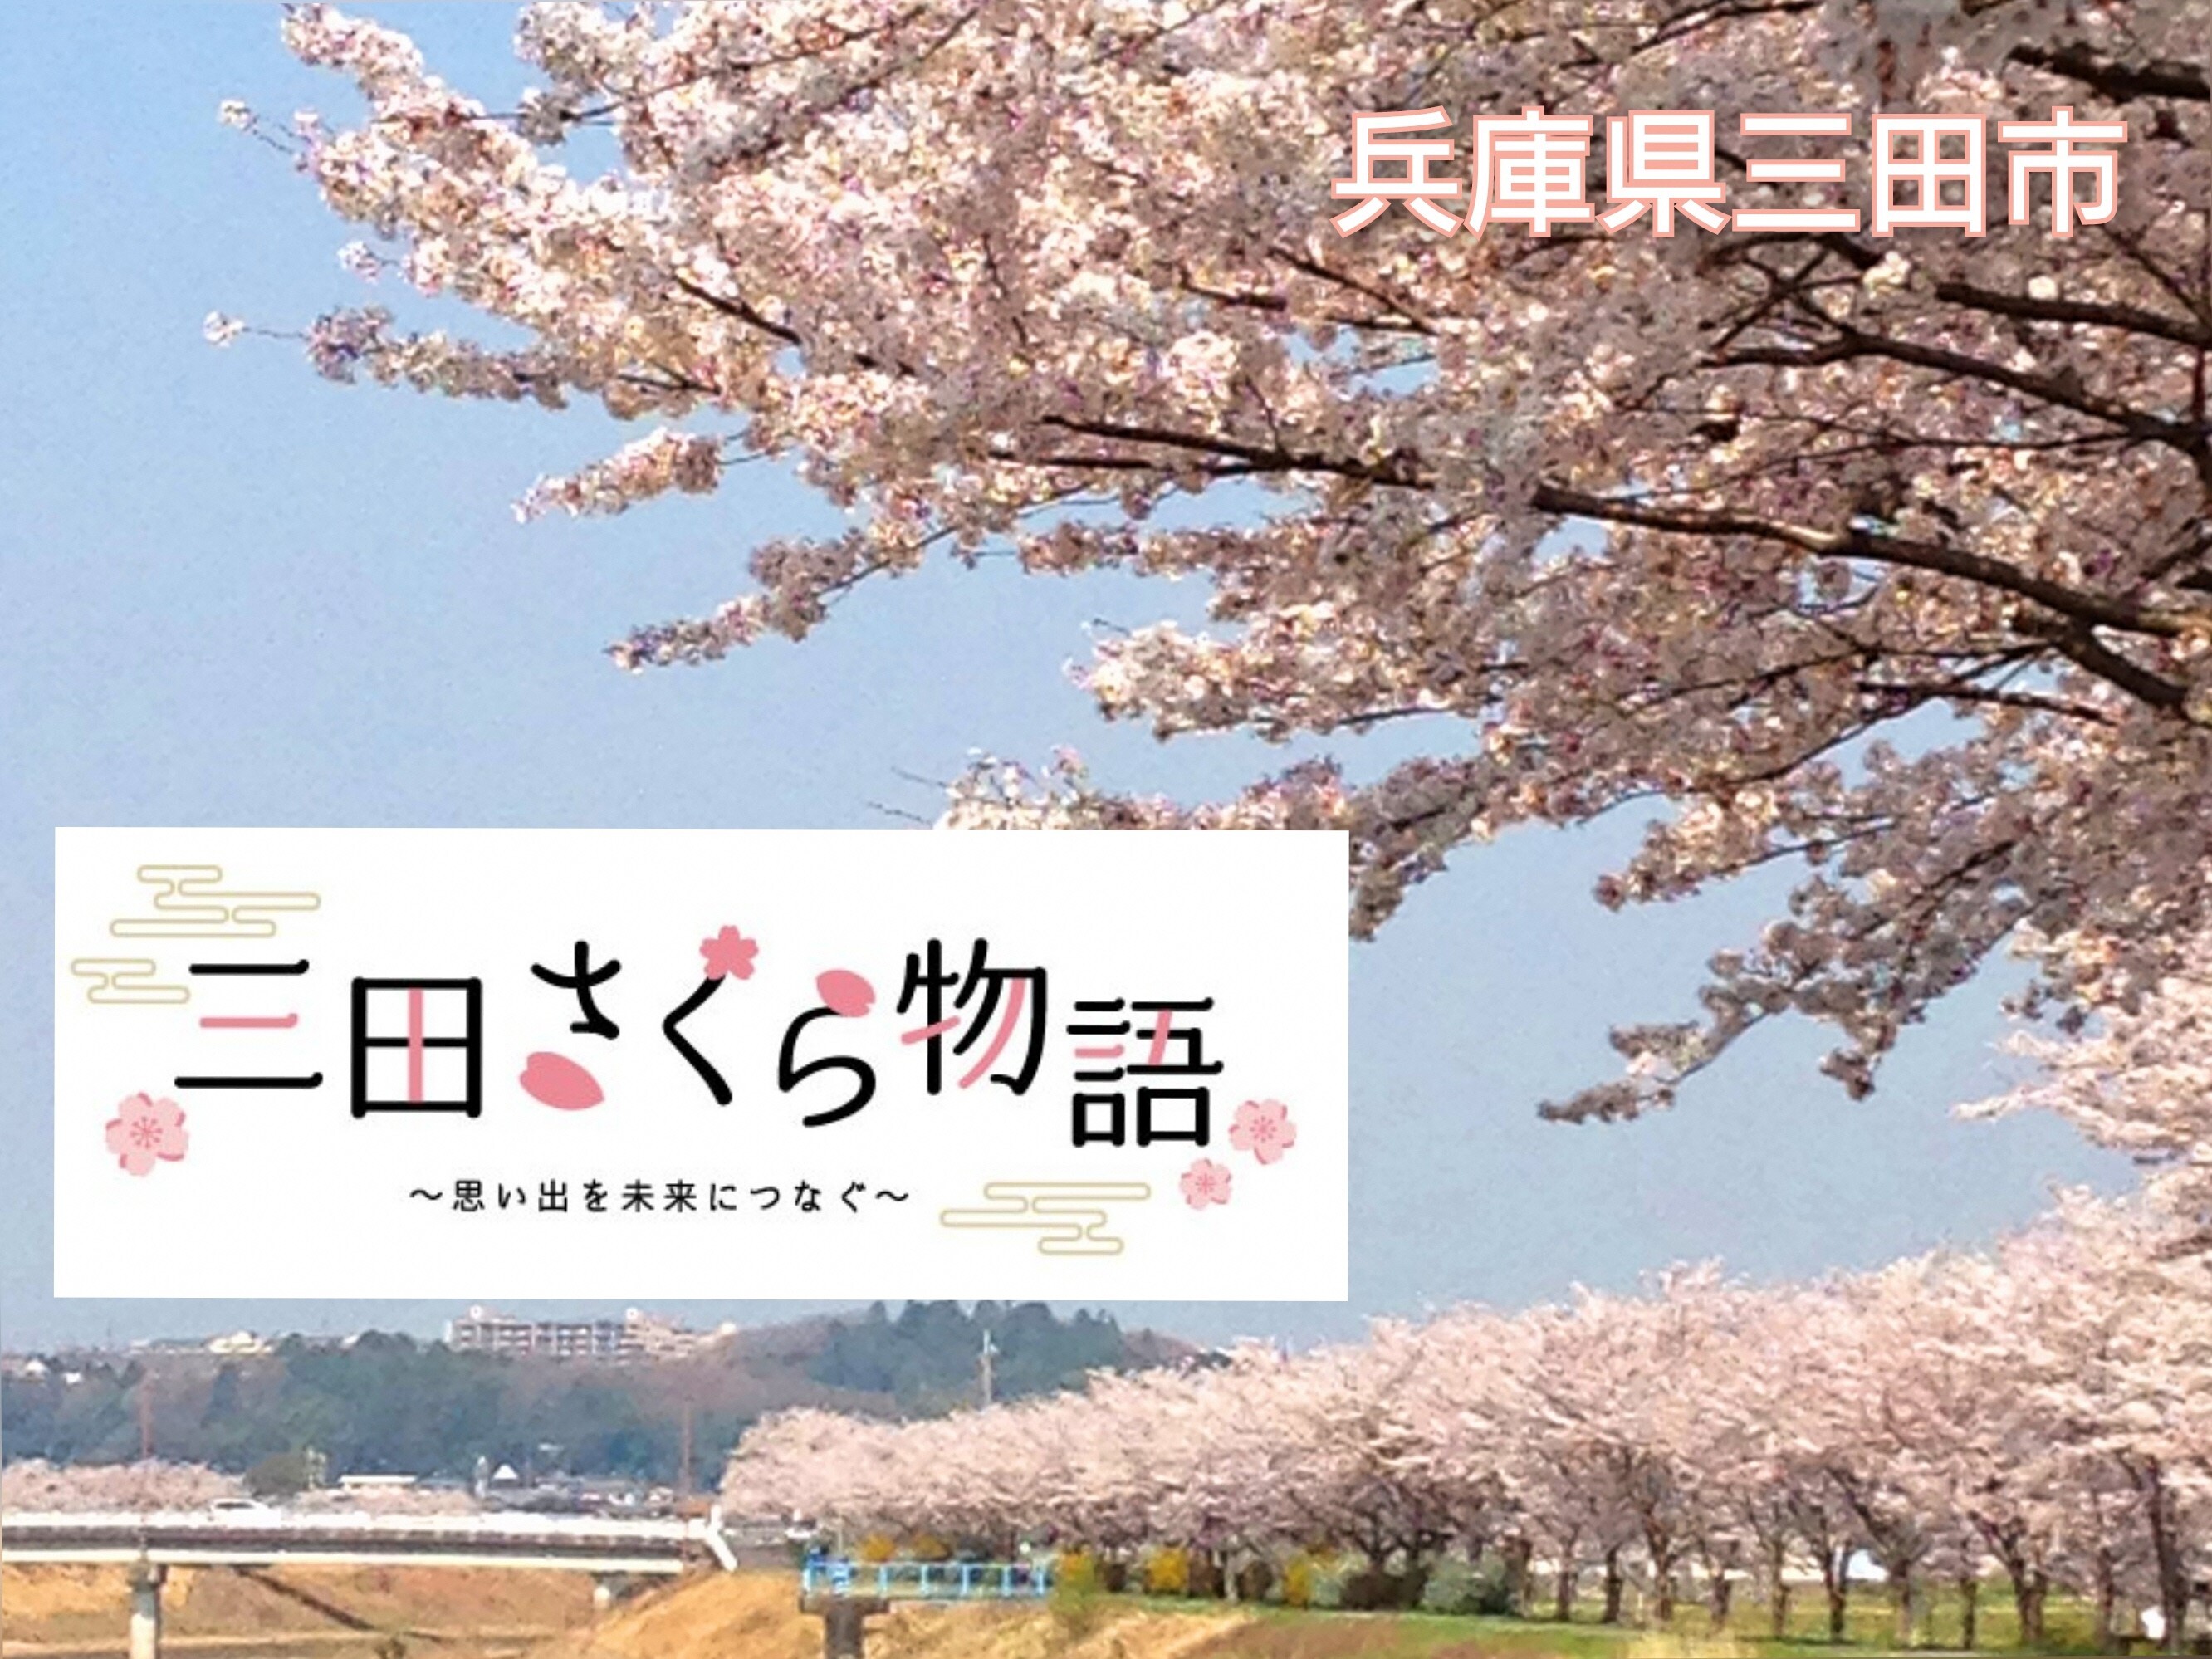 「昆布ポスター」で敦賀をPR！3月16日の北陸新幹線開業に合わせ、福井県敦賀市が制作、敦賀駅近くに展示。